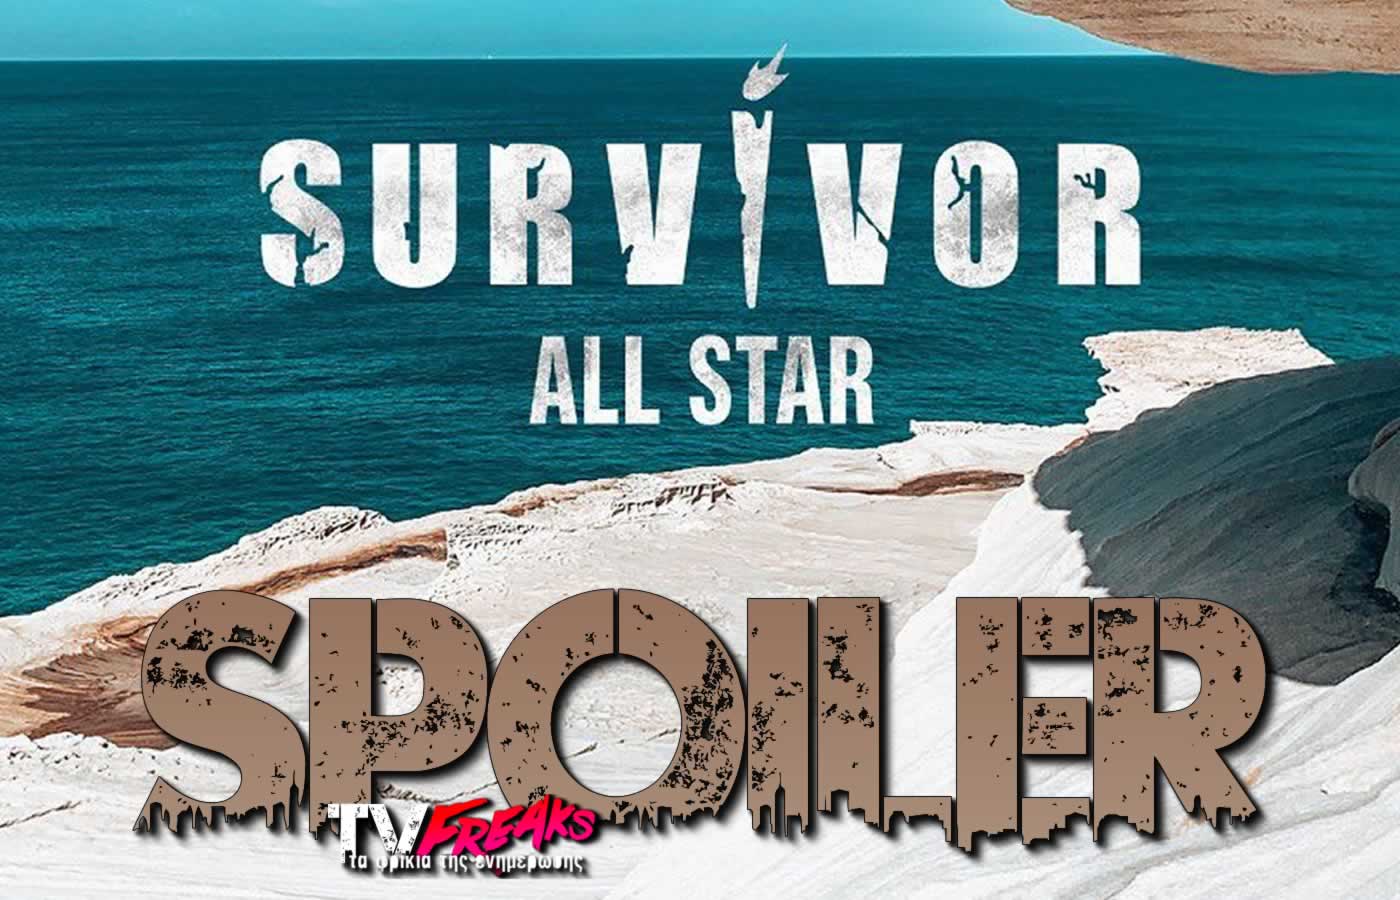 17 άνδρες και 16 γυναίκες είναι αυτοί που θα δώσουν το παρών στο Survivor All Star σύμφωνα με το spoiler που κυκλοφορεί για το ριάλιτι